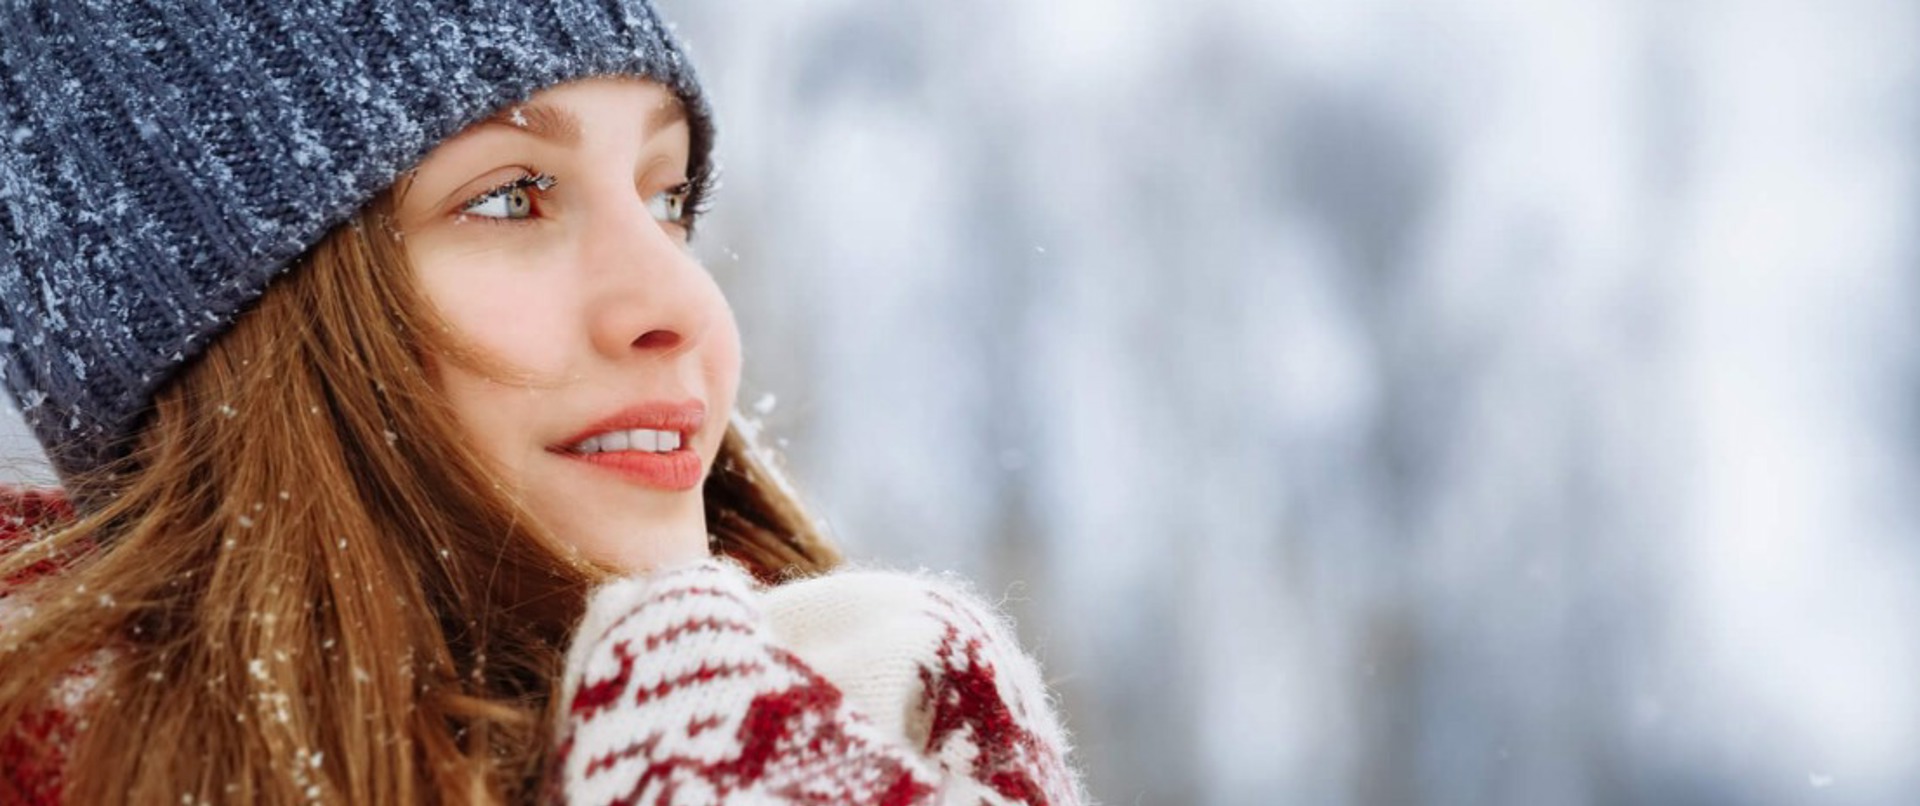 Soğukla Randevu: Kışın Uygulanacak En İyi Cilt Bakım Rutini